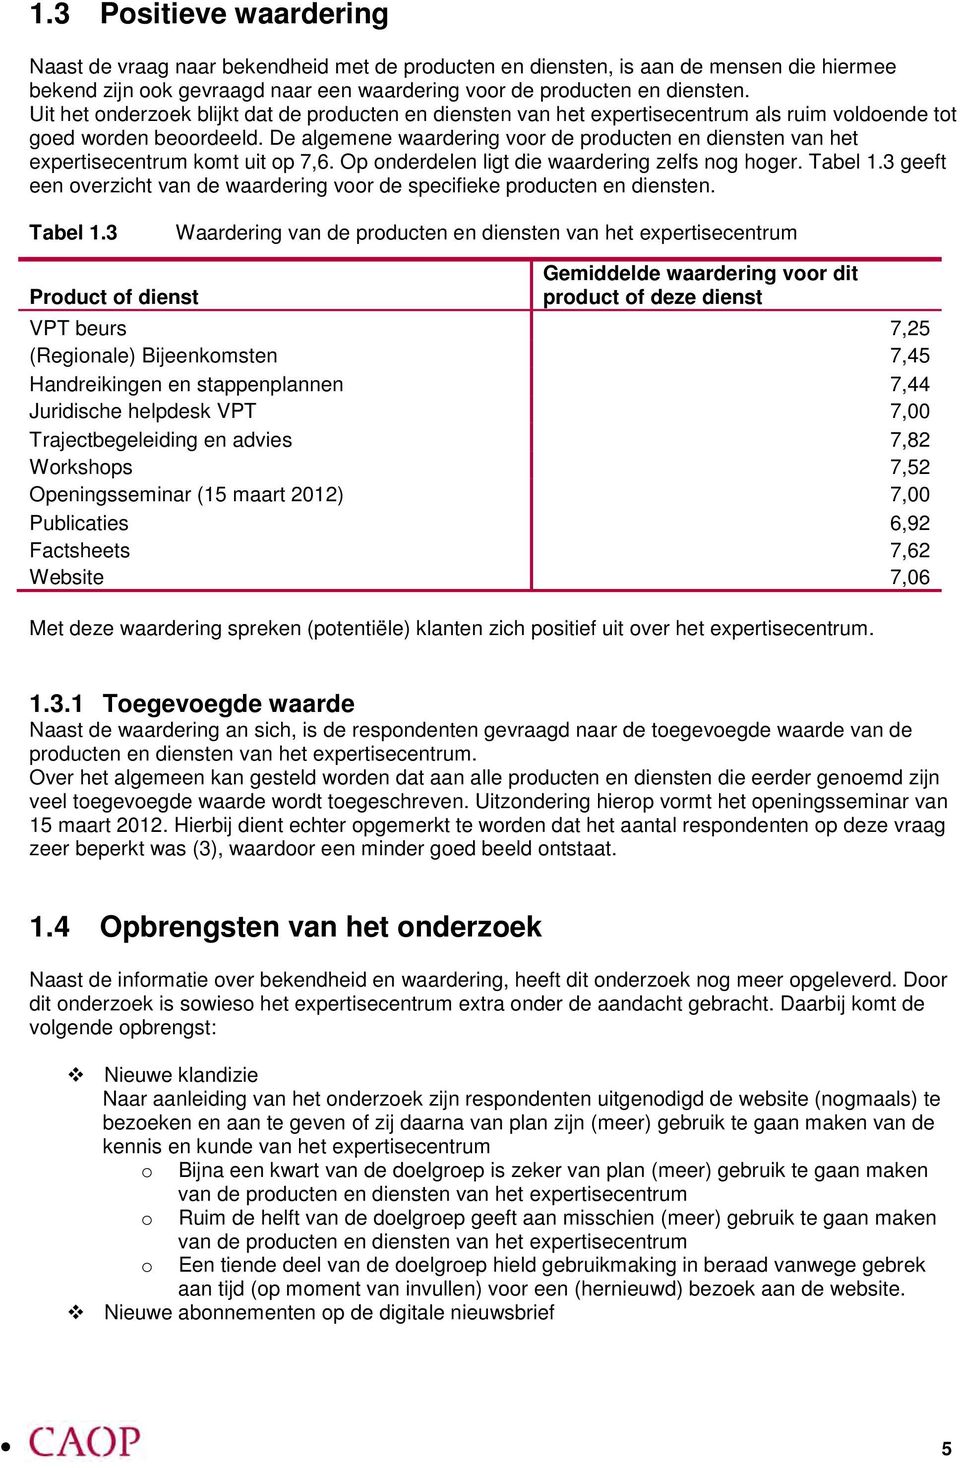 De algemene waardering vr de prducten en diensten van het expertisecentrum kmt uit p 7,6. Op nderdelen ligt die waardering zelfs ng hger. Tabel 1.